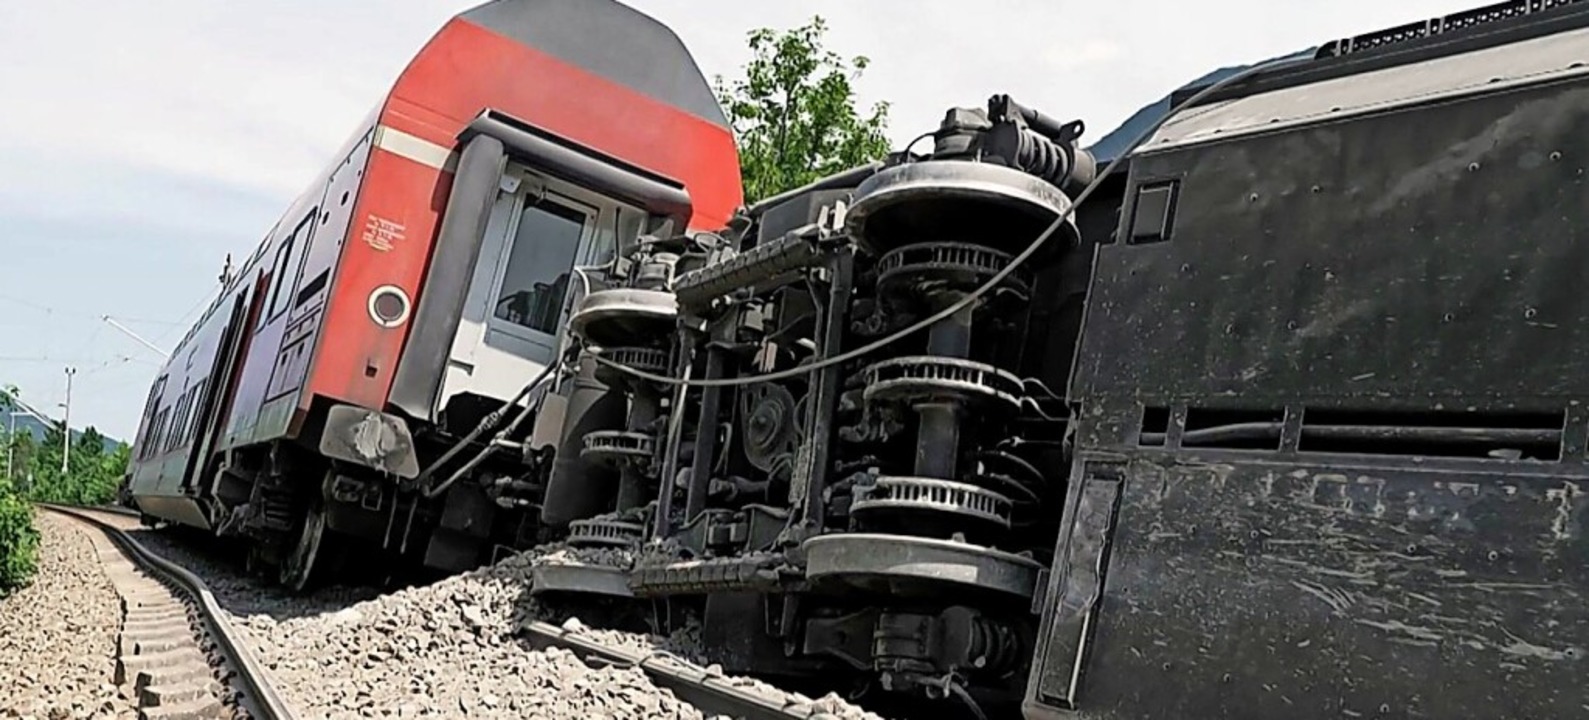 Der entgleiste und der umgestürzte Waggon des verunglückten Zuges  | Foto: - (AFP)